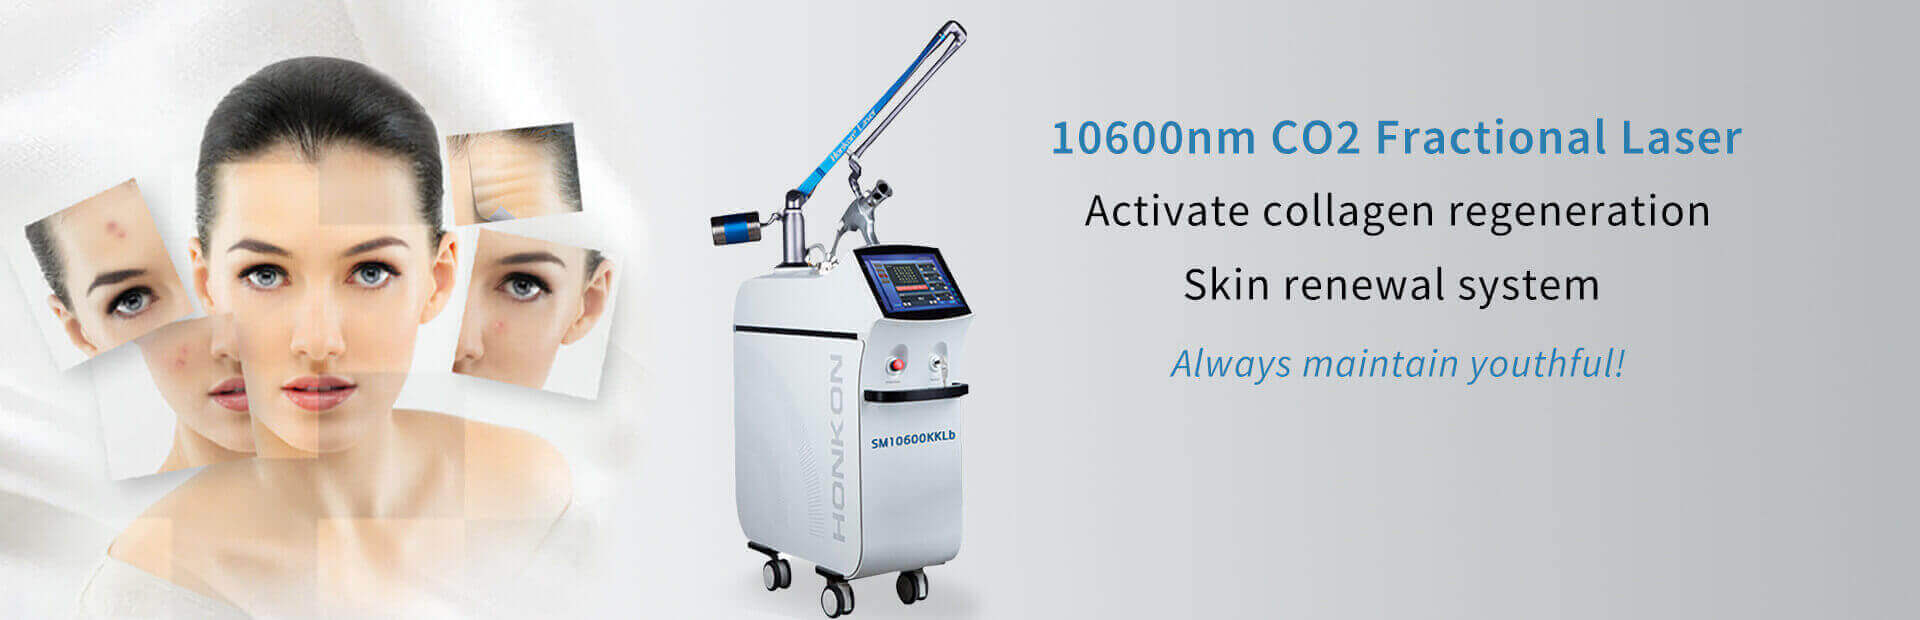 SM10600KKlb Вагинальная подтяжка 10600 нм CO2 Фракционный лазер для удаления растяжек/шрамов, машина для шлифовки кожи против морщин